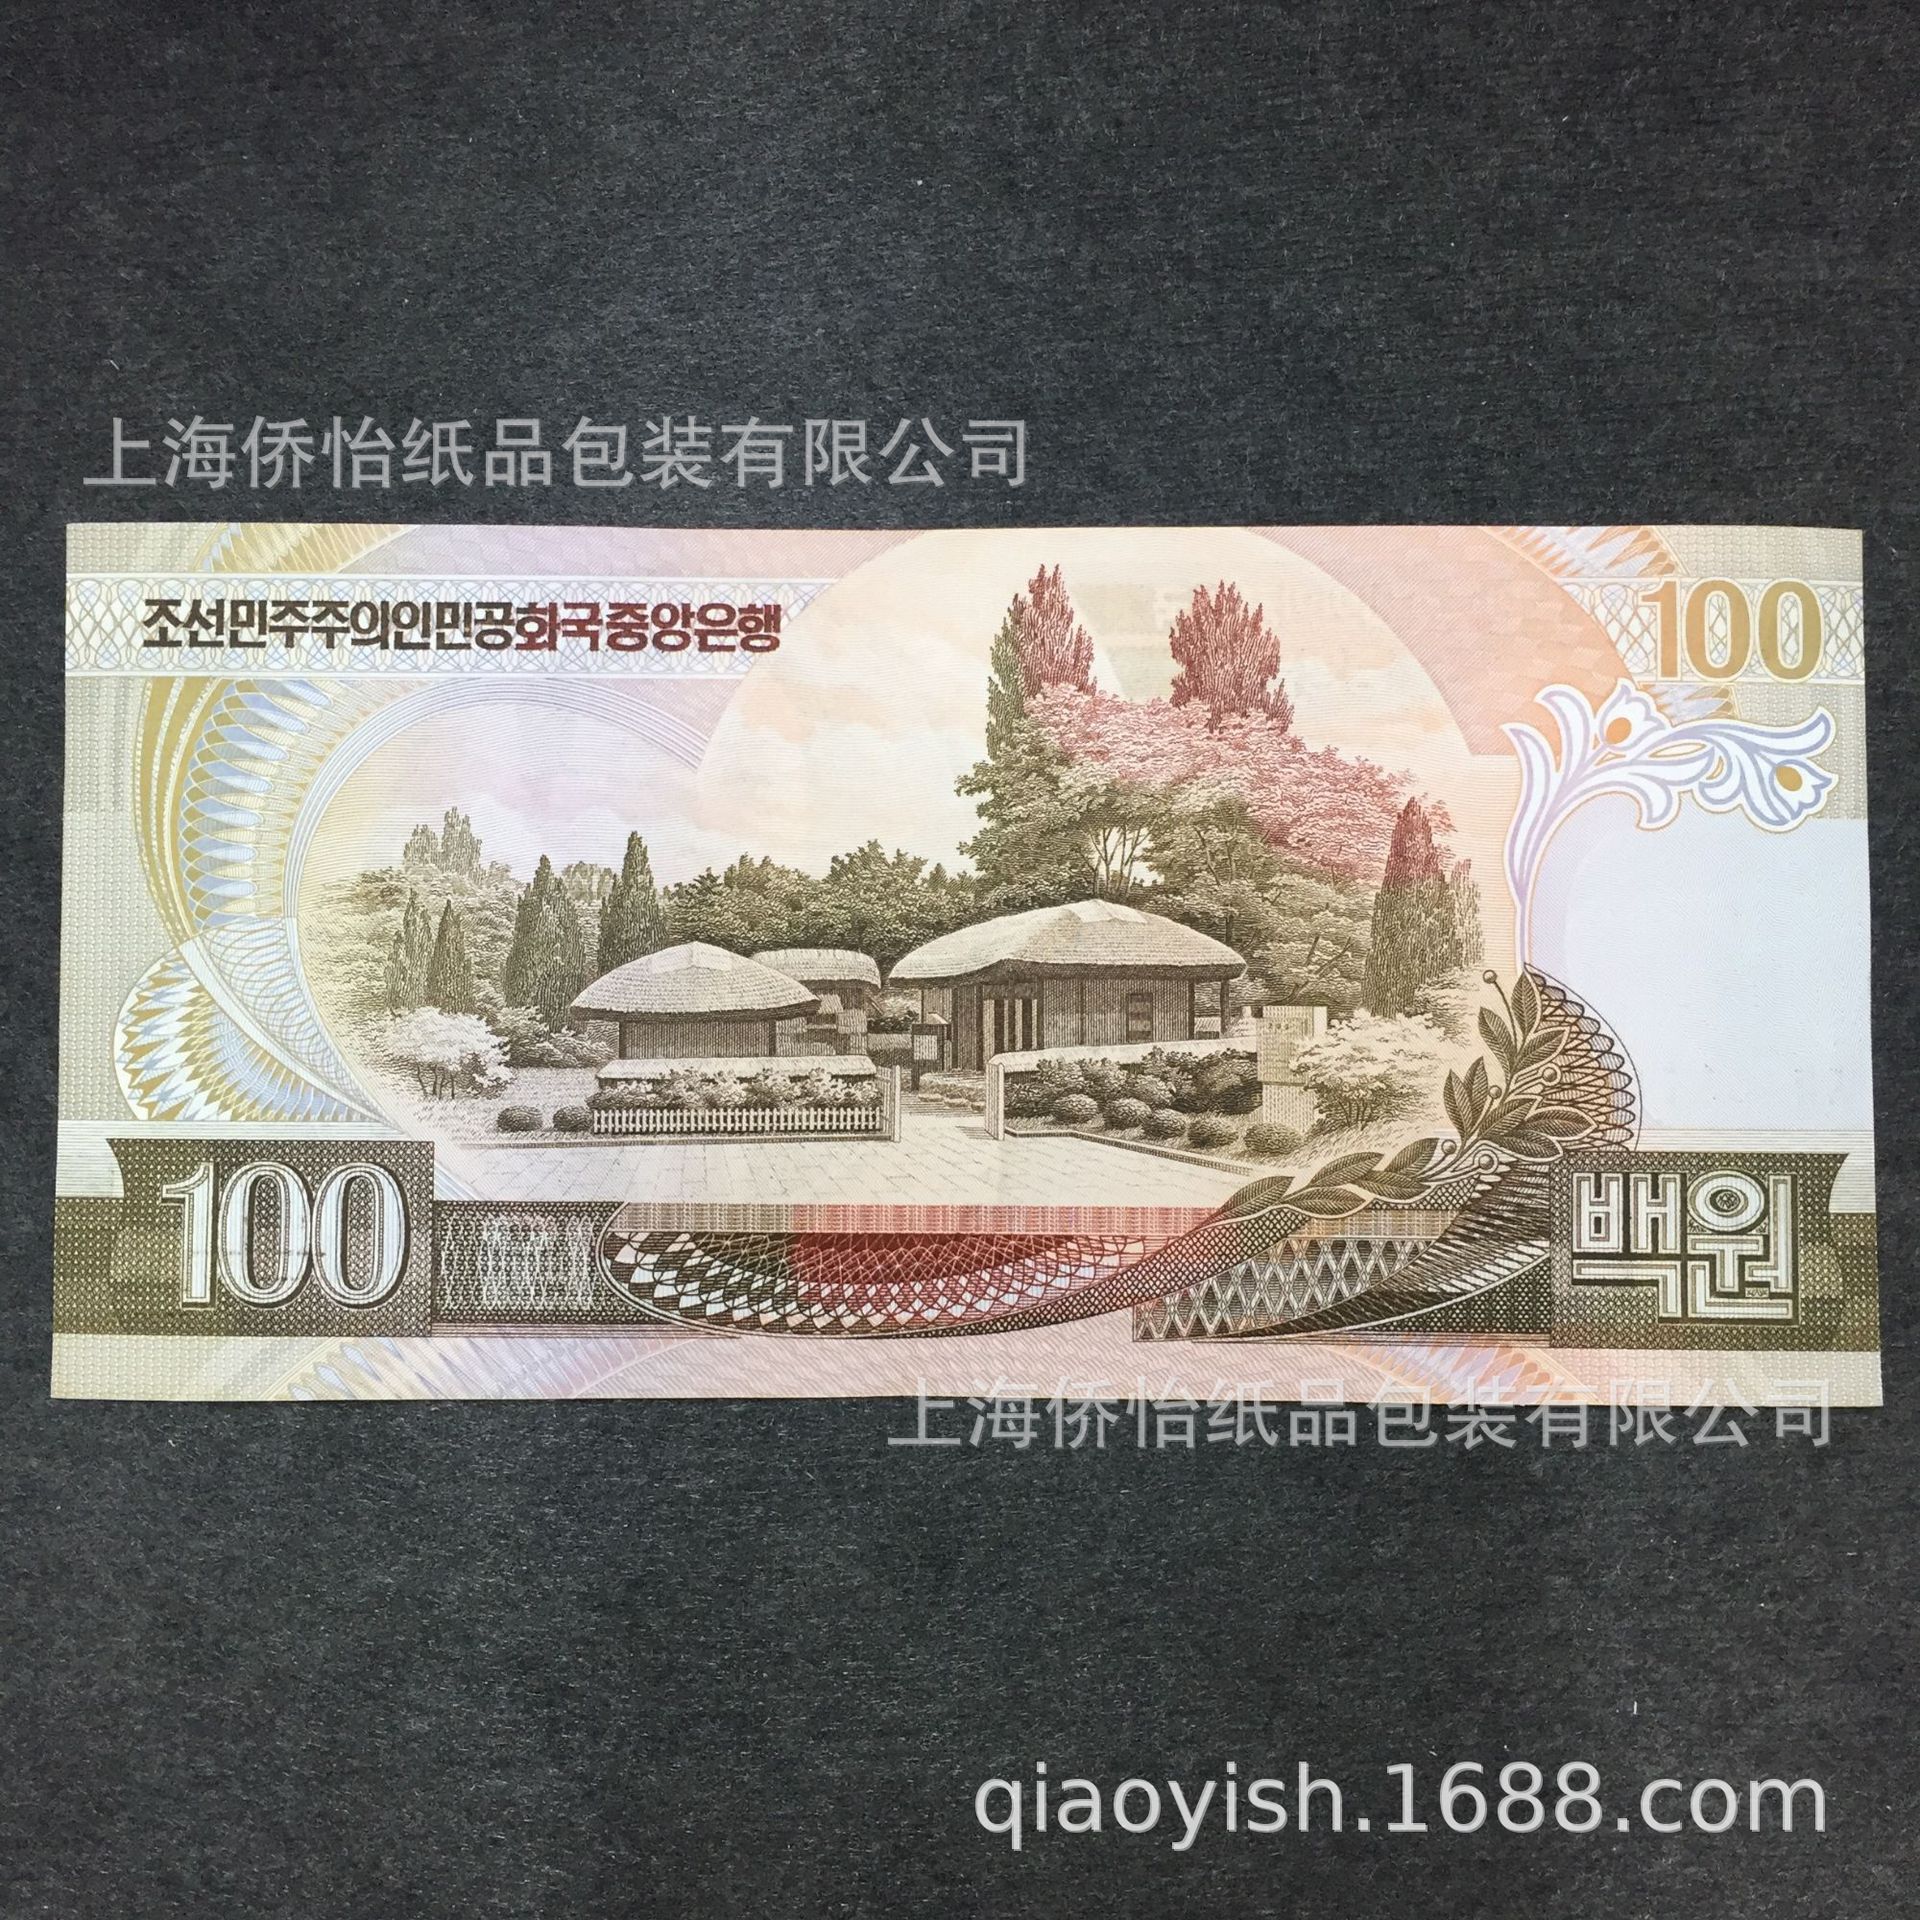 【亚洲】全新朝鲜纸币 外币 5000元 2006年 单张正品